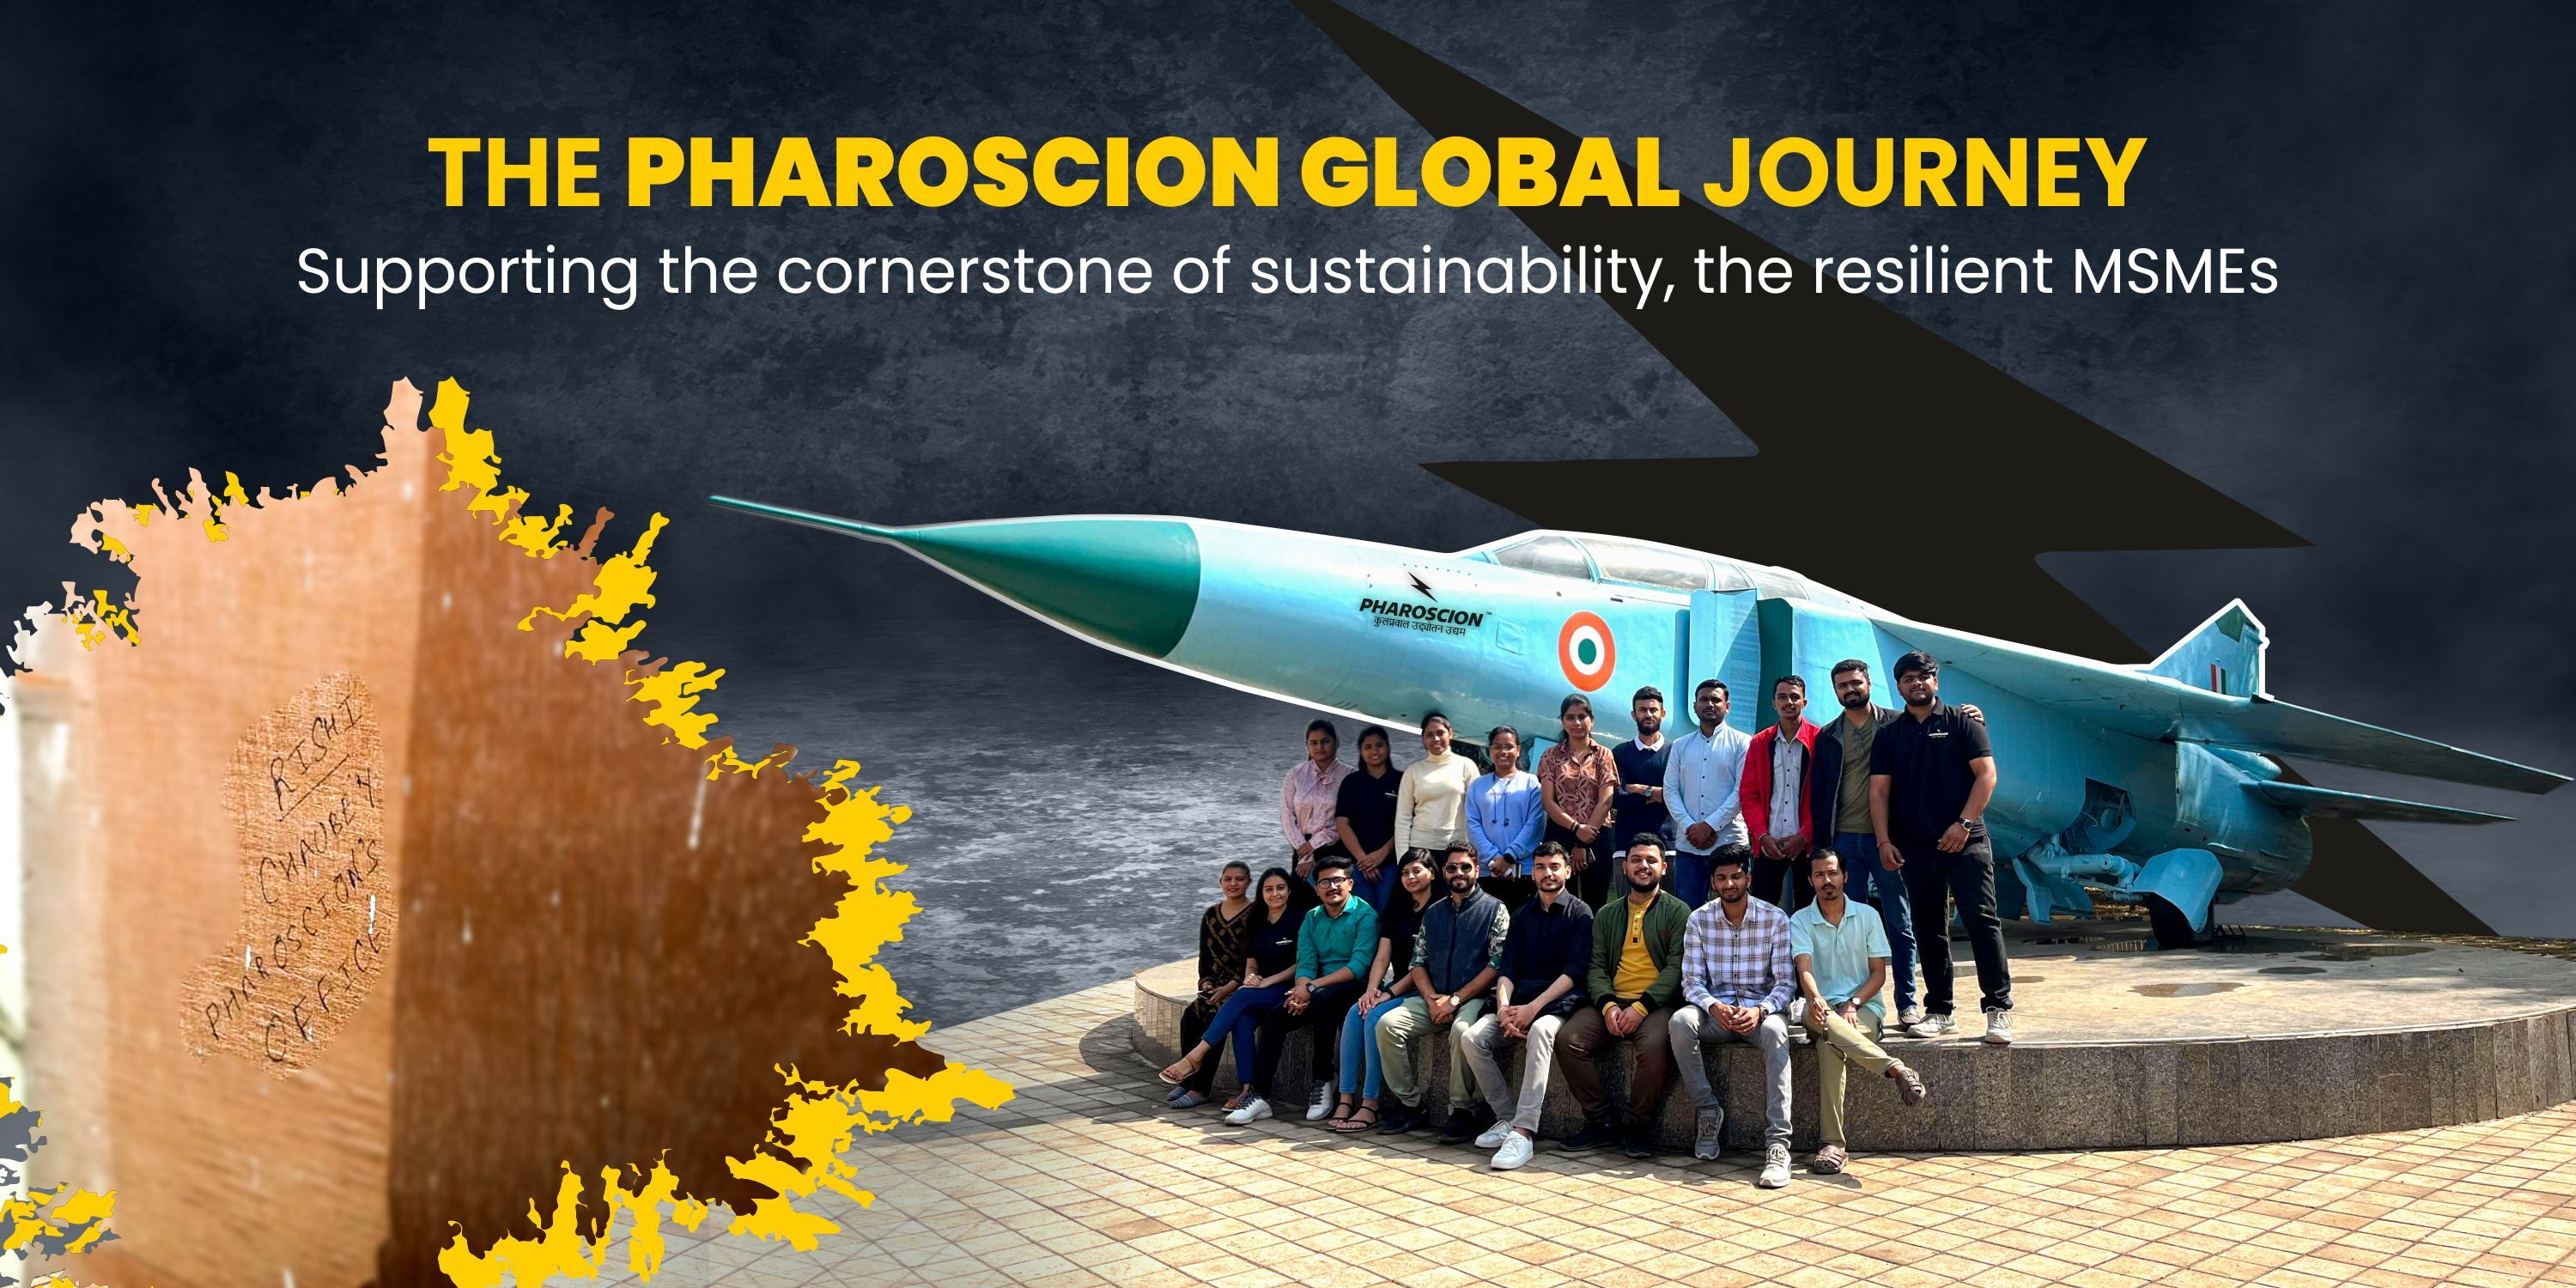 Pharoscion Global Journey